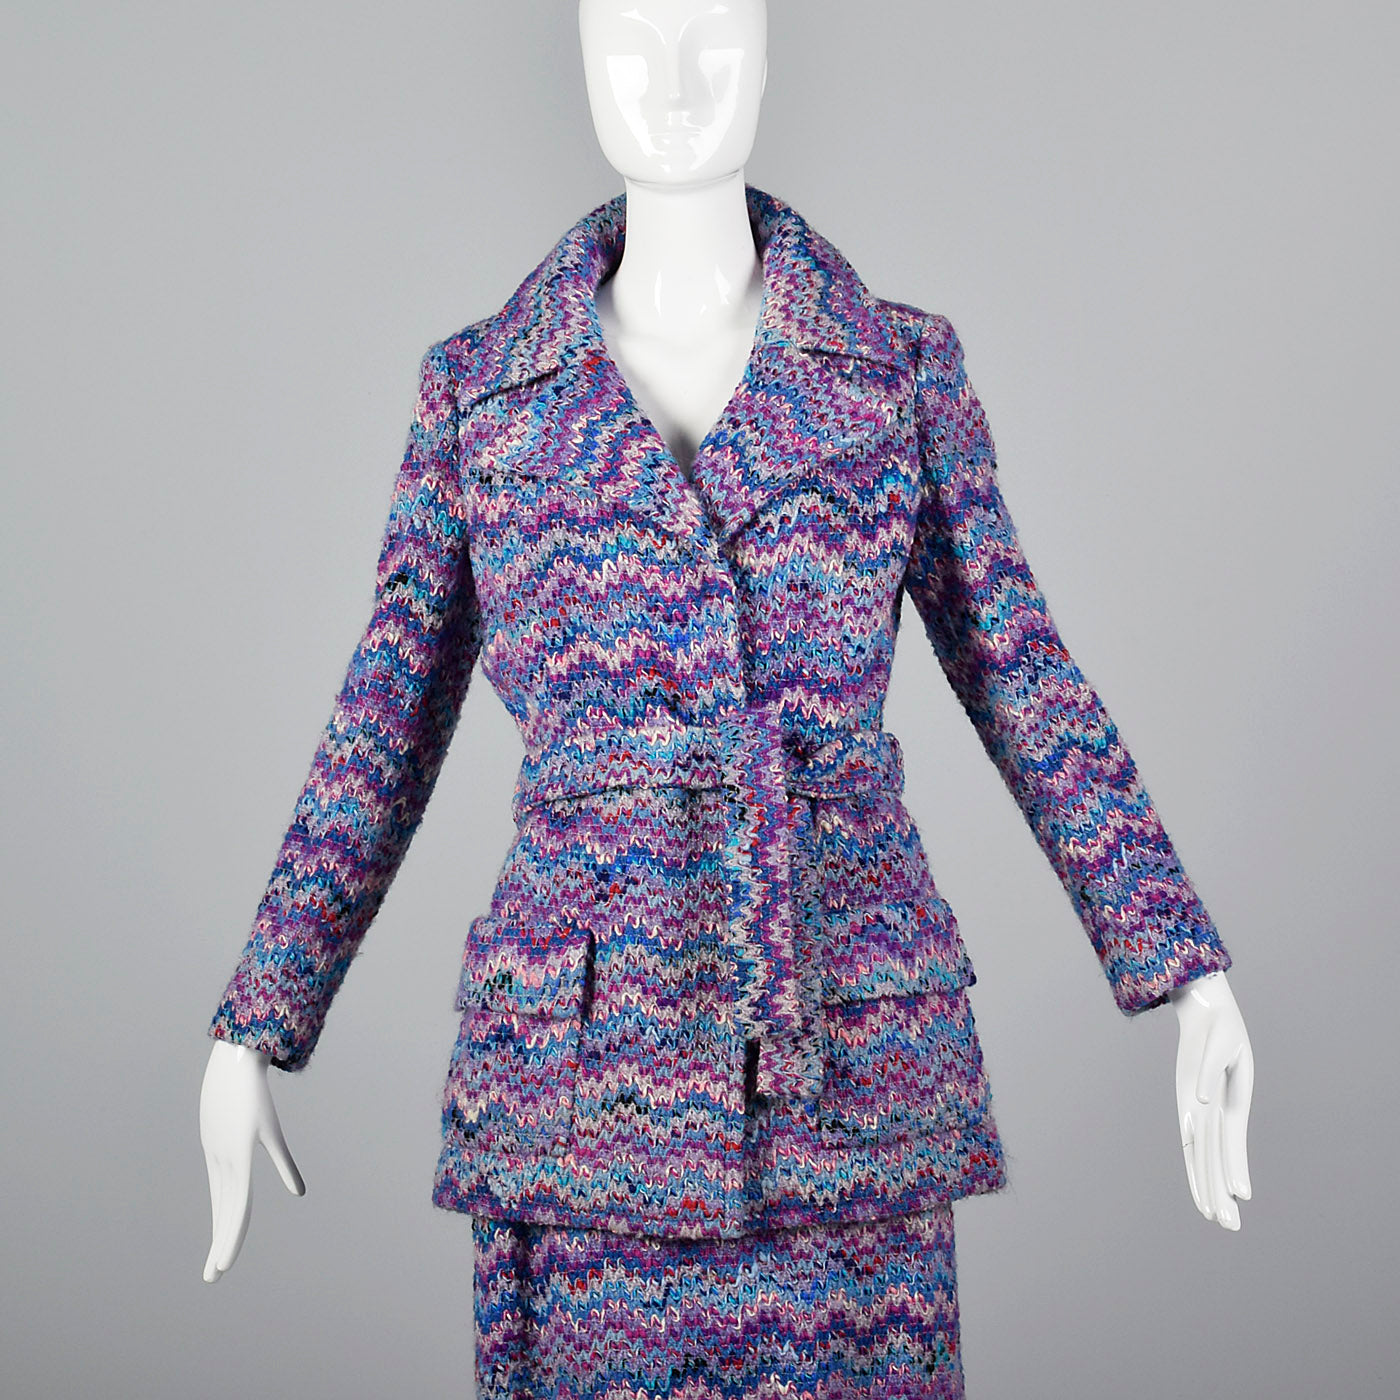 1970s Via Veneto Couture Boutique Purple Tweed Skirt Suit